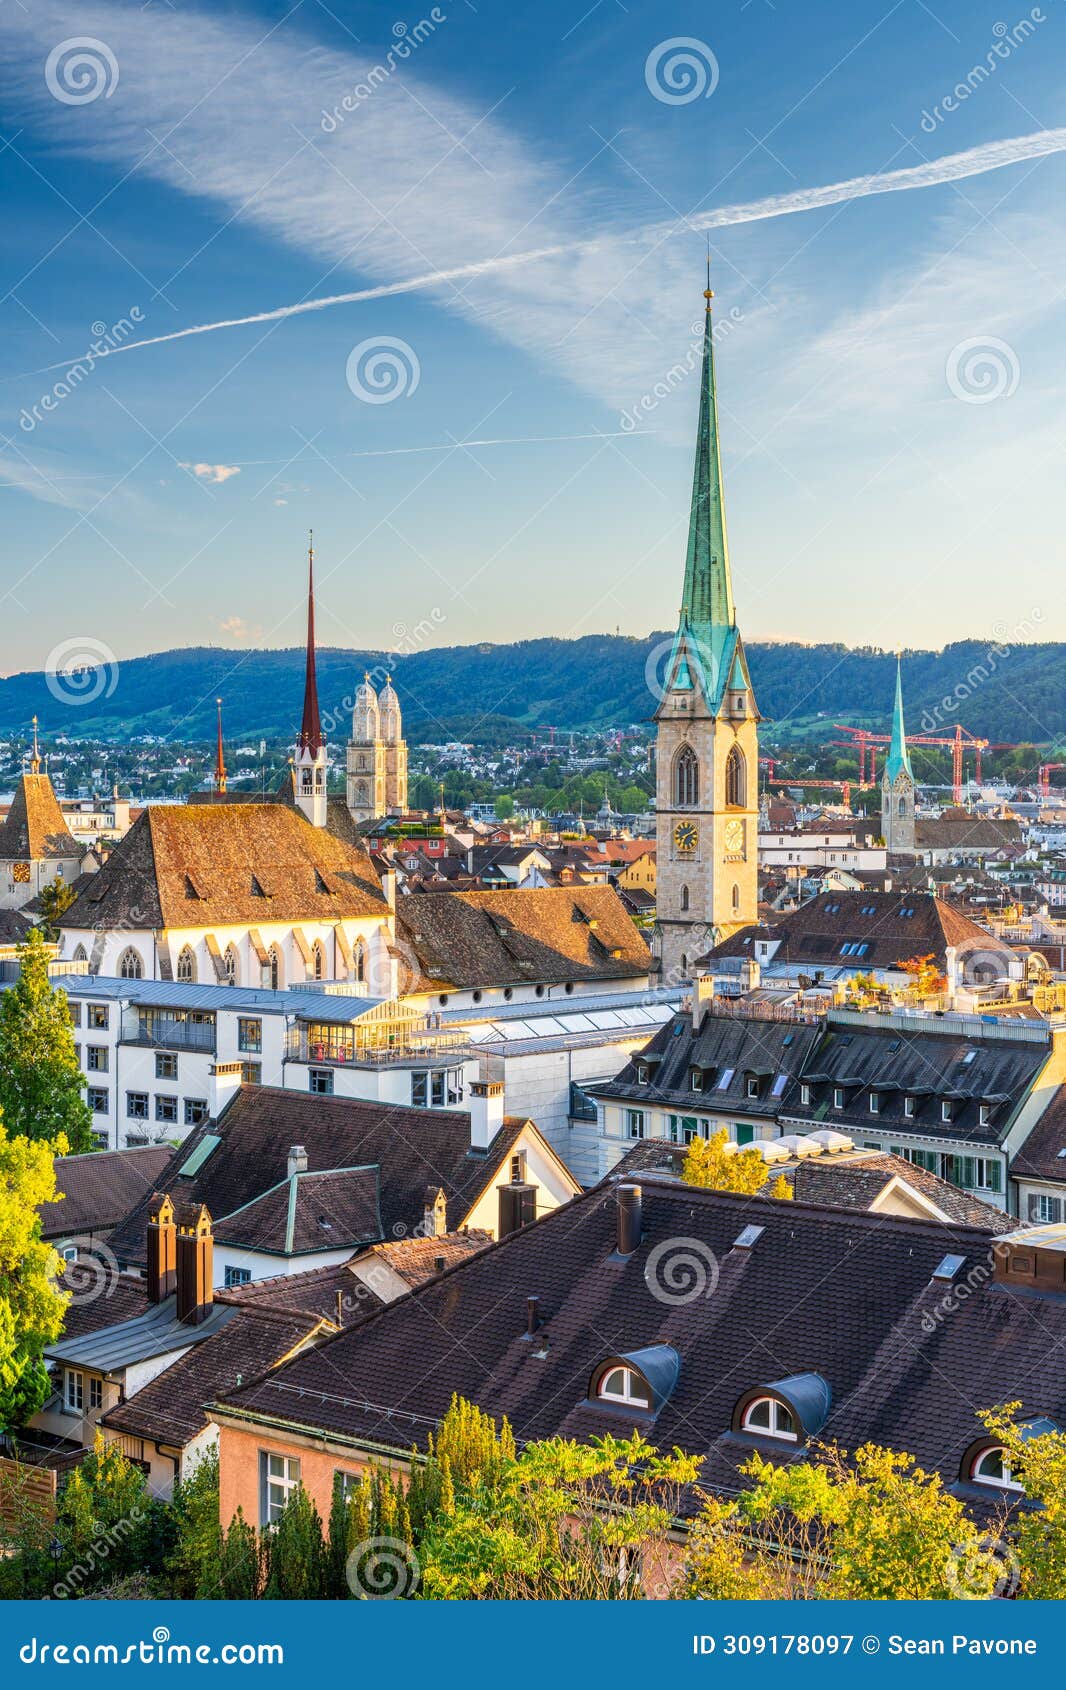 zurich, switzerland cityscape with church steeples